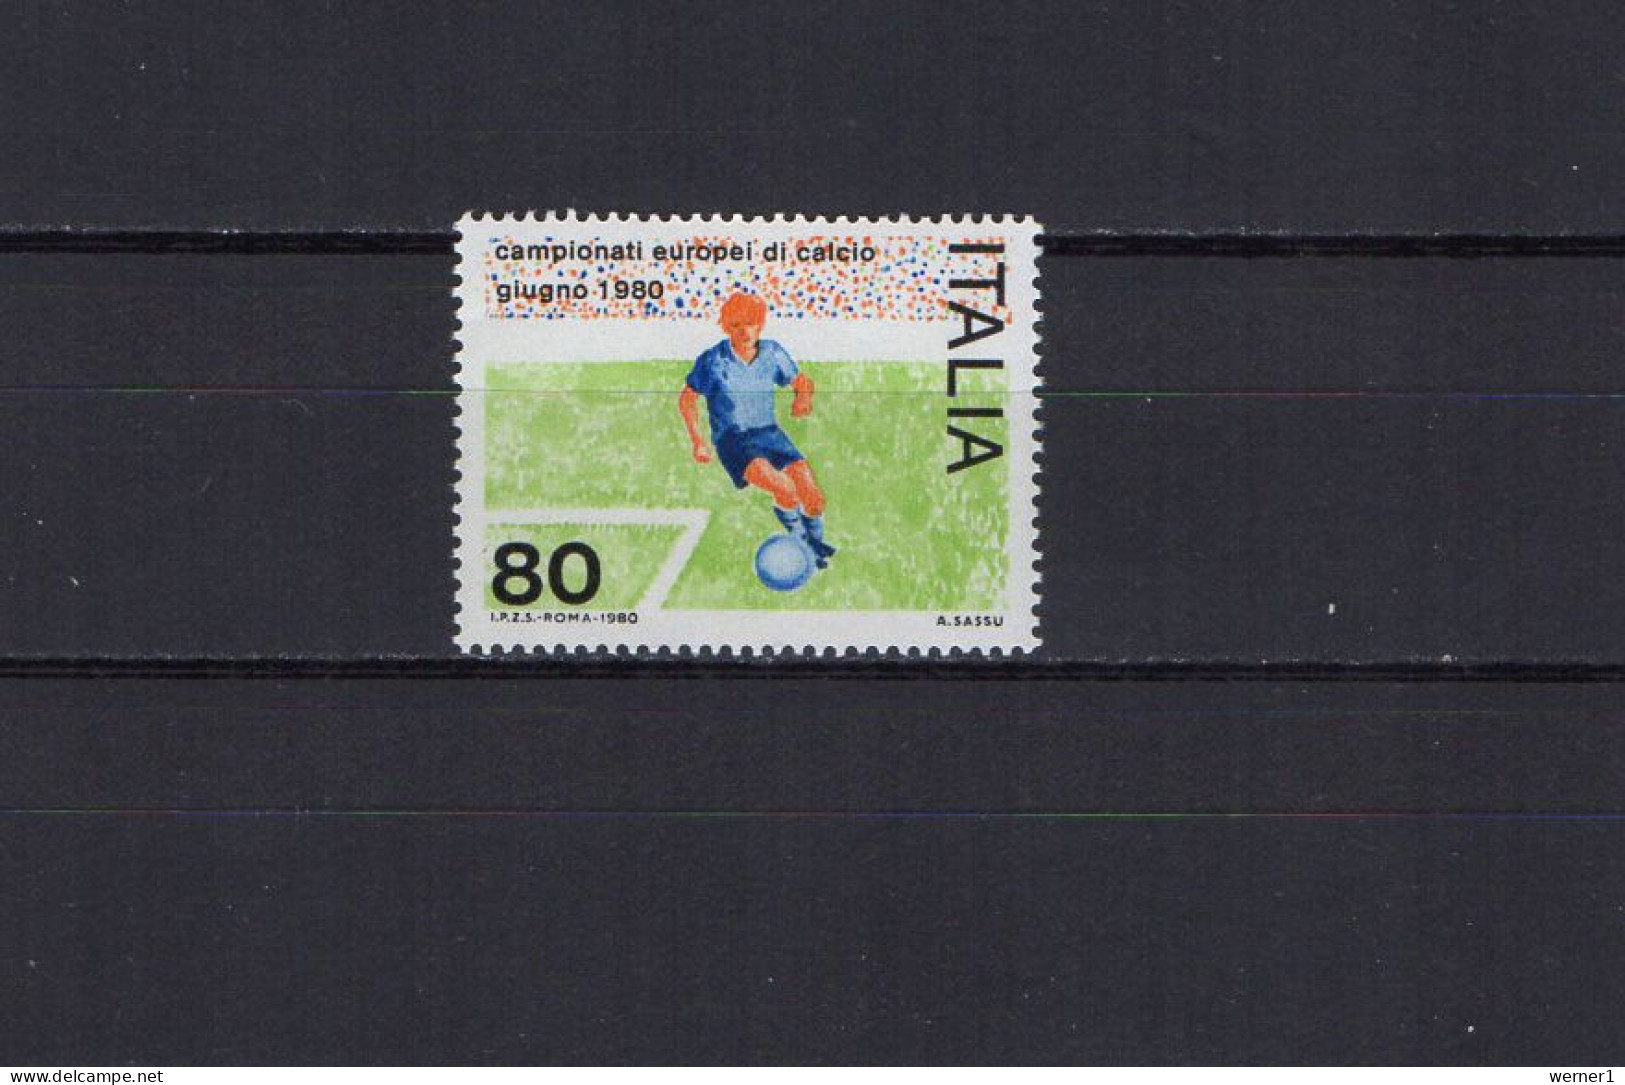 Italy 1980 Football Soccer European Championship Stamp MNH - Fußball-Europameisterschaft (UEFA)